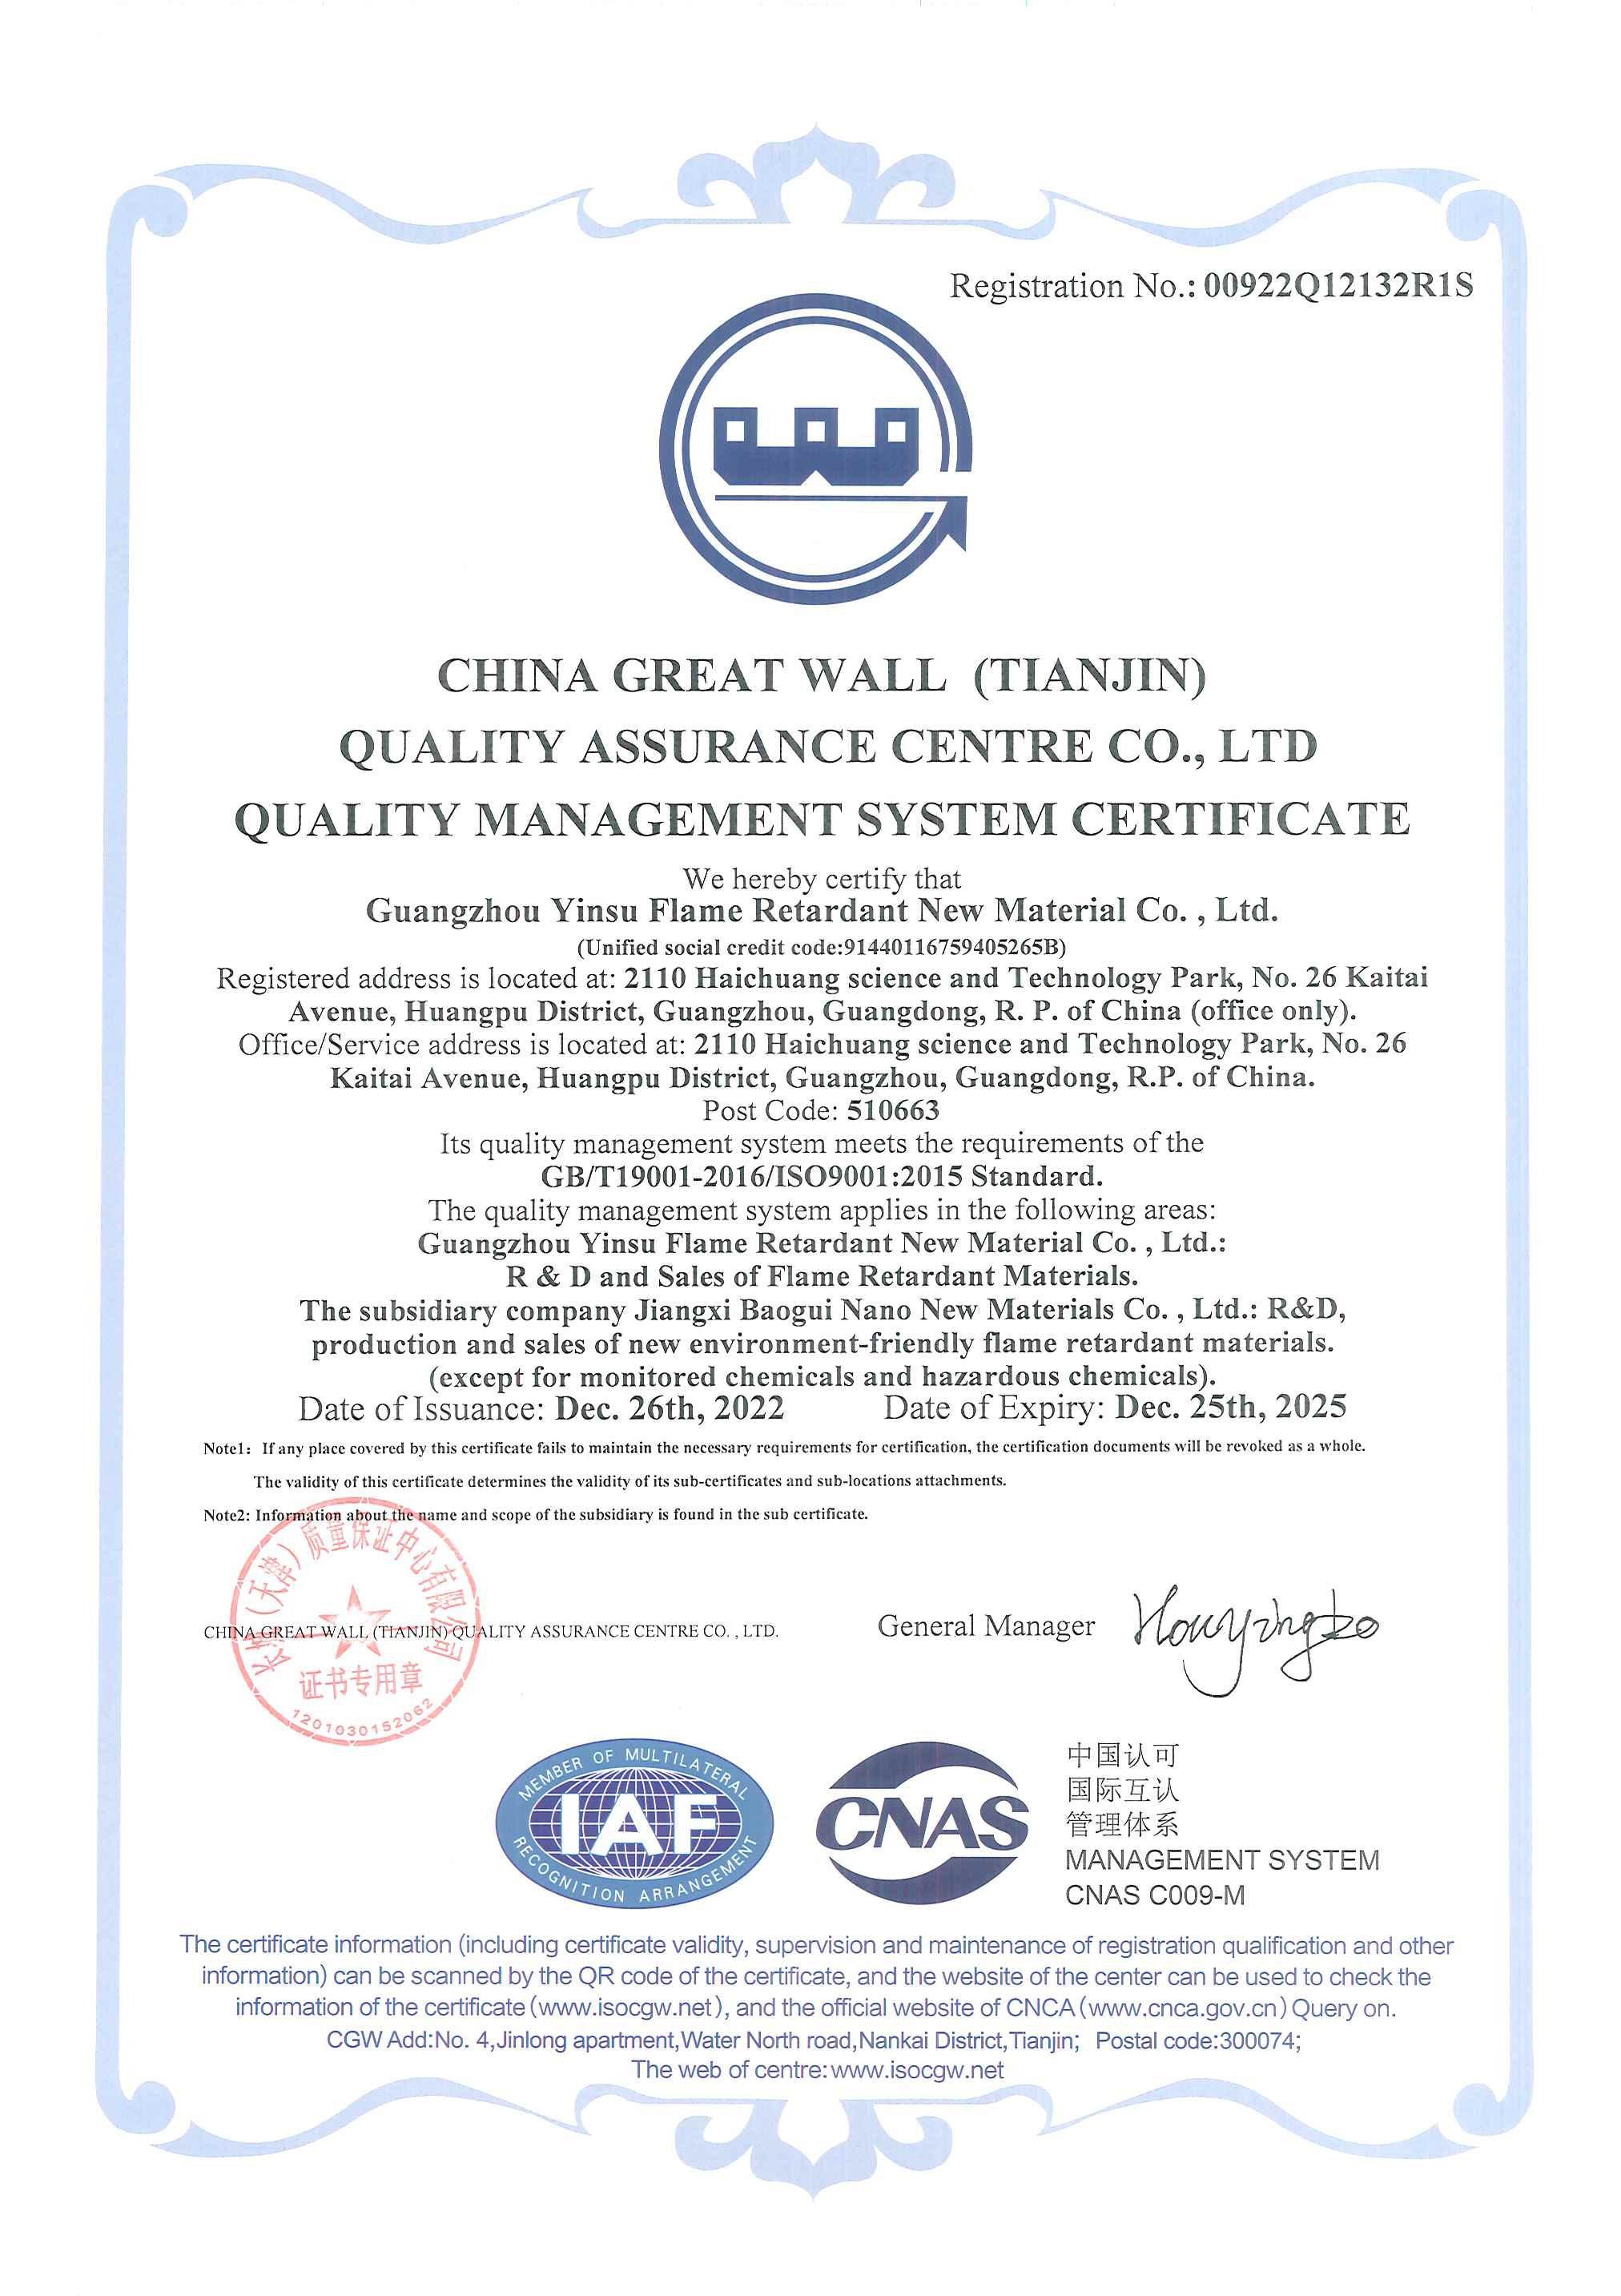 Felicitaciones: Yinsu Company recibe la certificación ISO9001 por segunda vez: una marca de excelencia en la gestión de calidad.